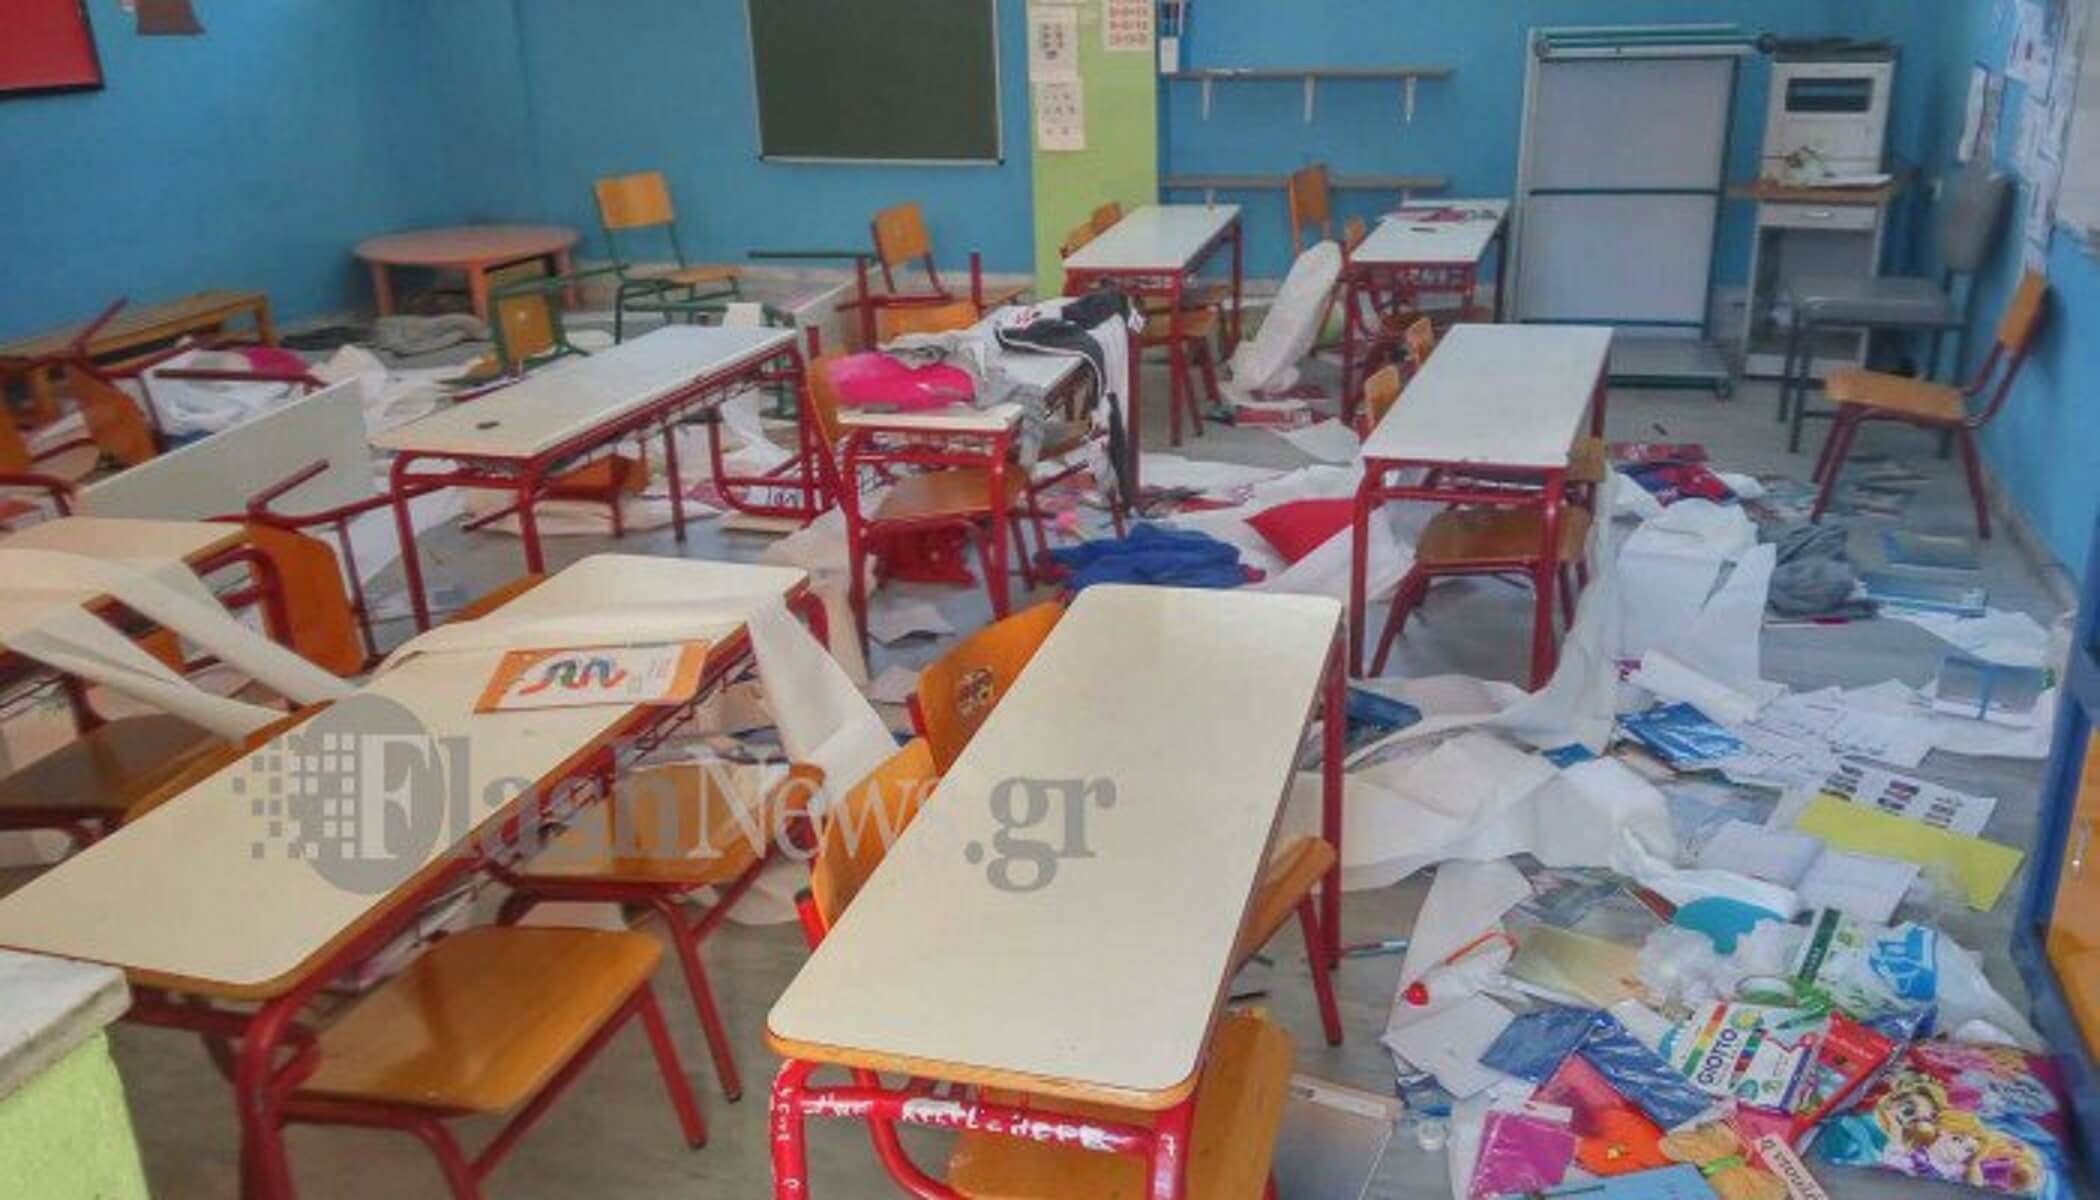 Βάνδαλοι κατέστρεψαν αίθουσες σε σχολείο της Κρήτης! – video